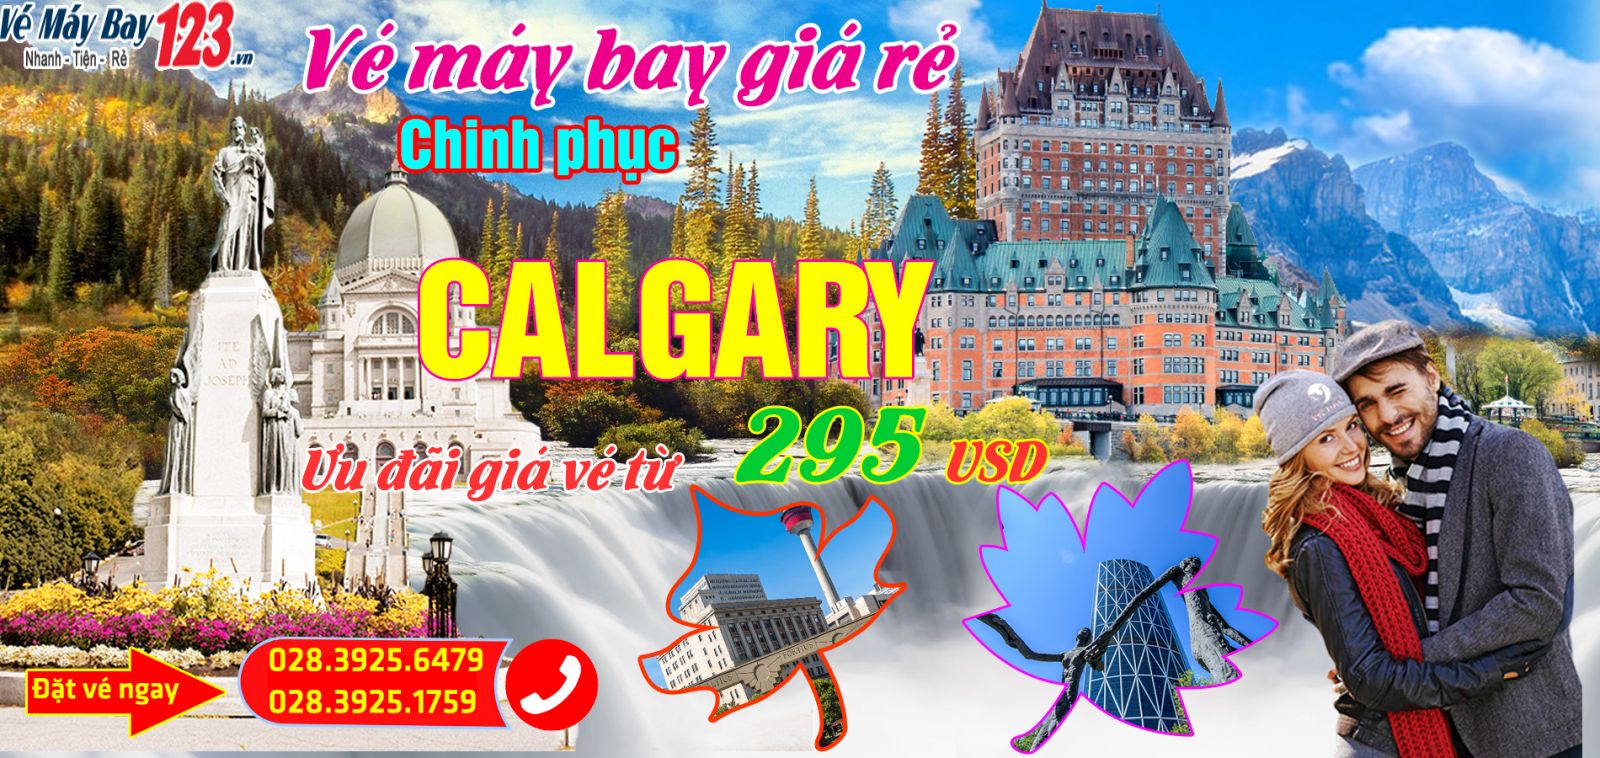 Vé máy bay giá rẻ đi Calgary - Canada